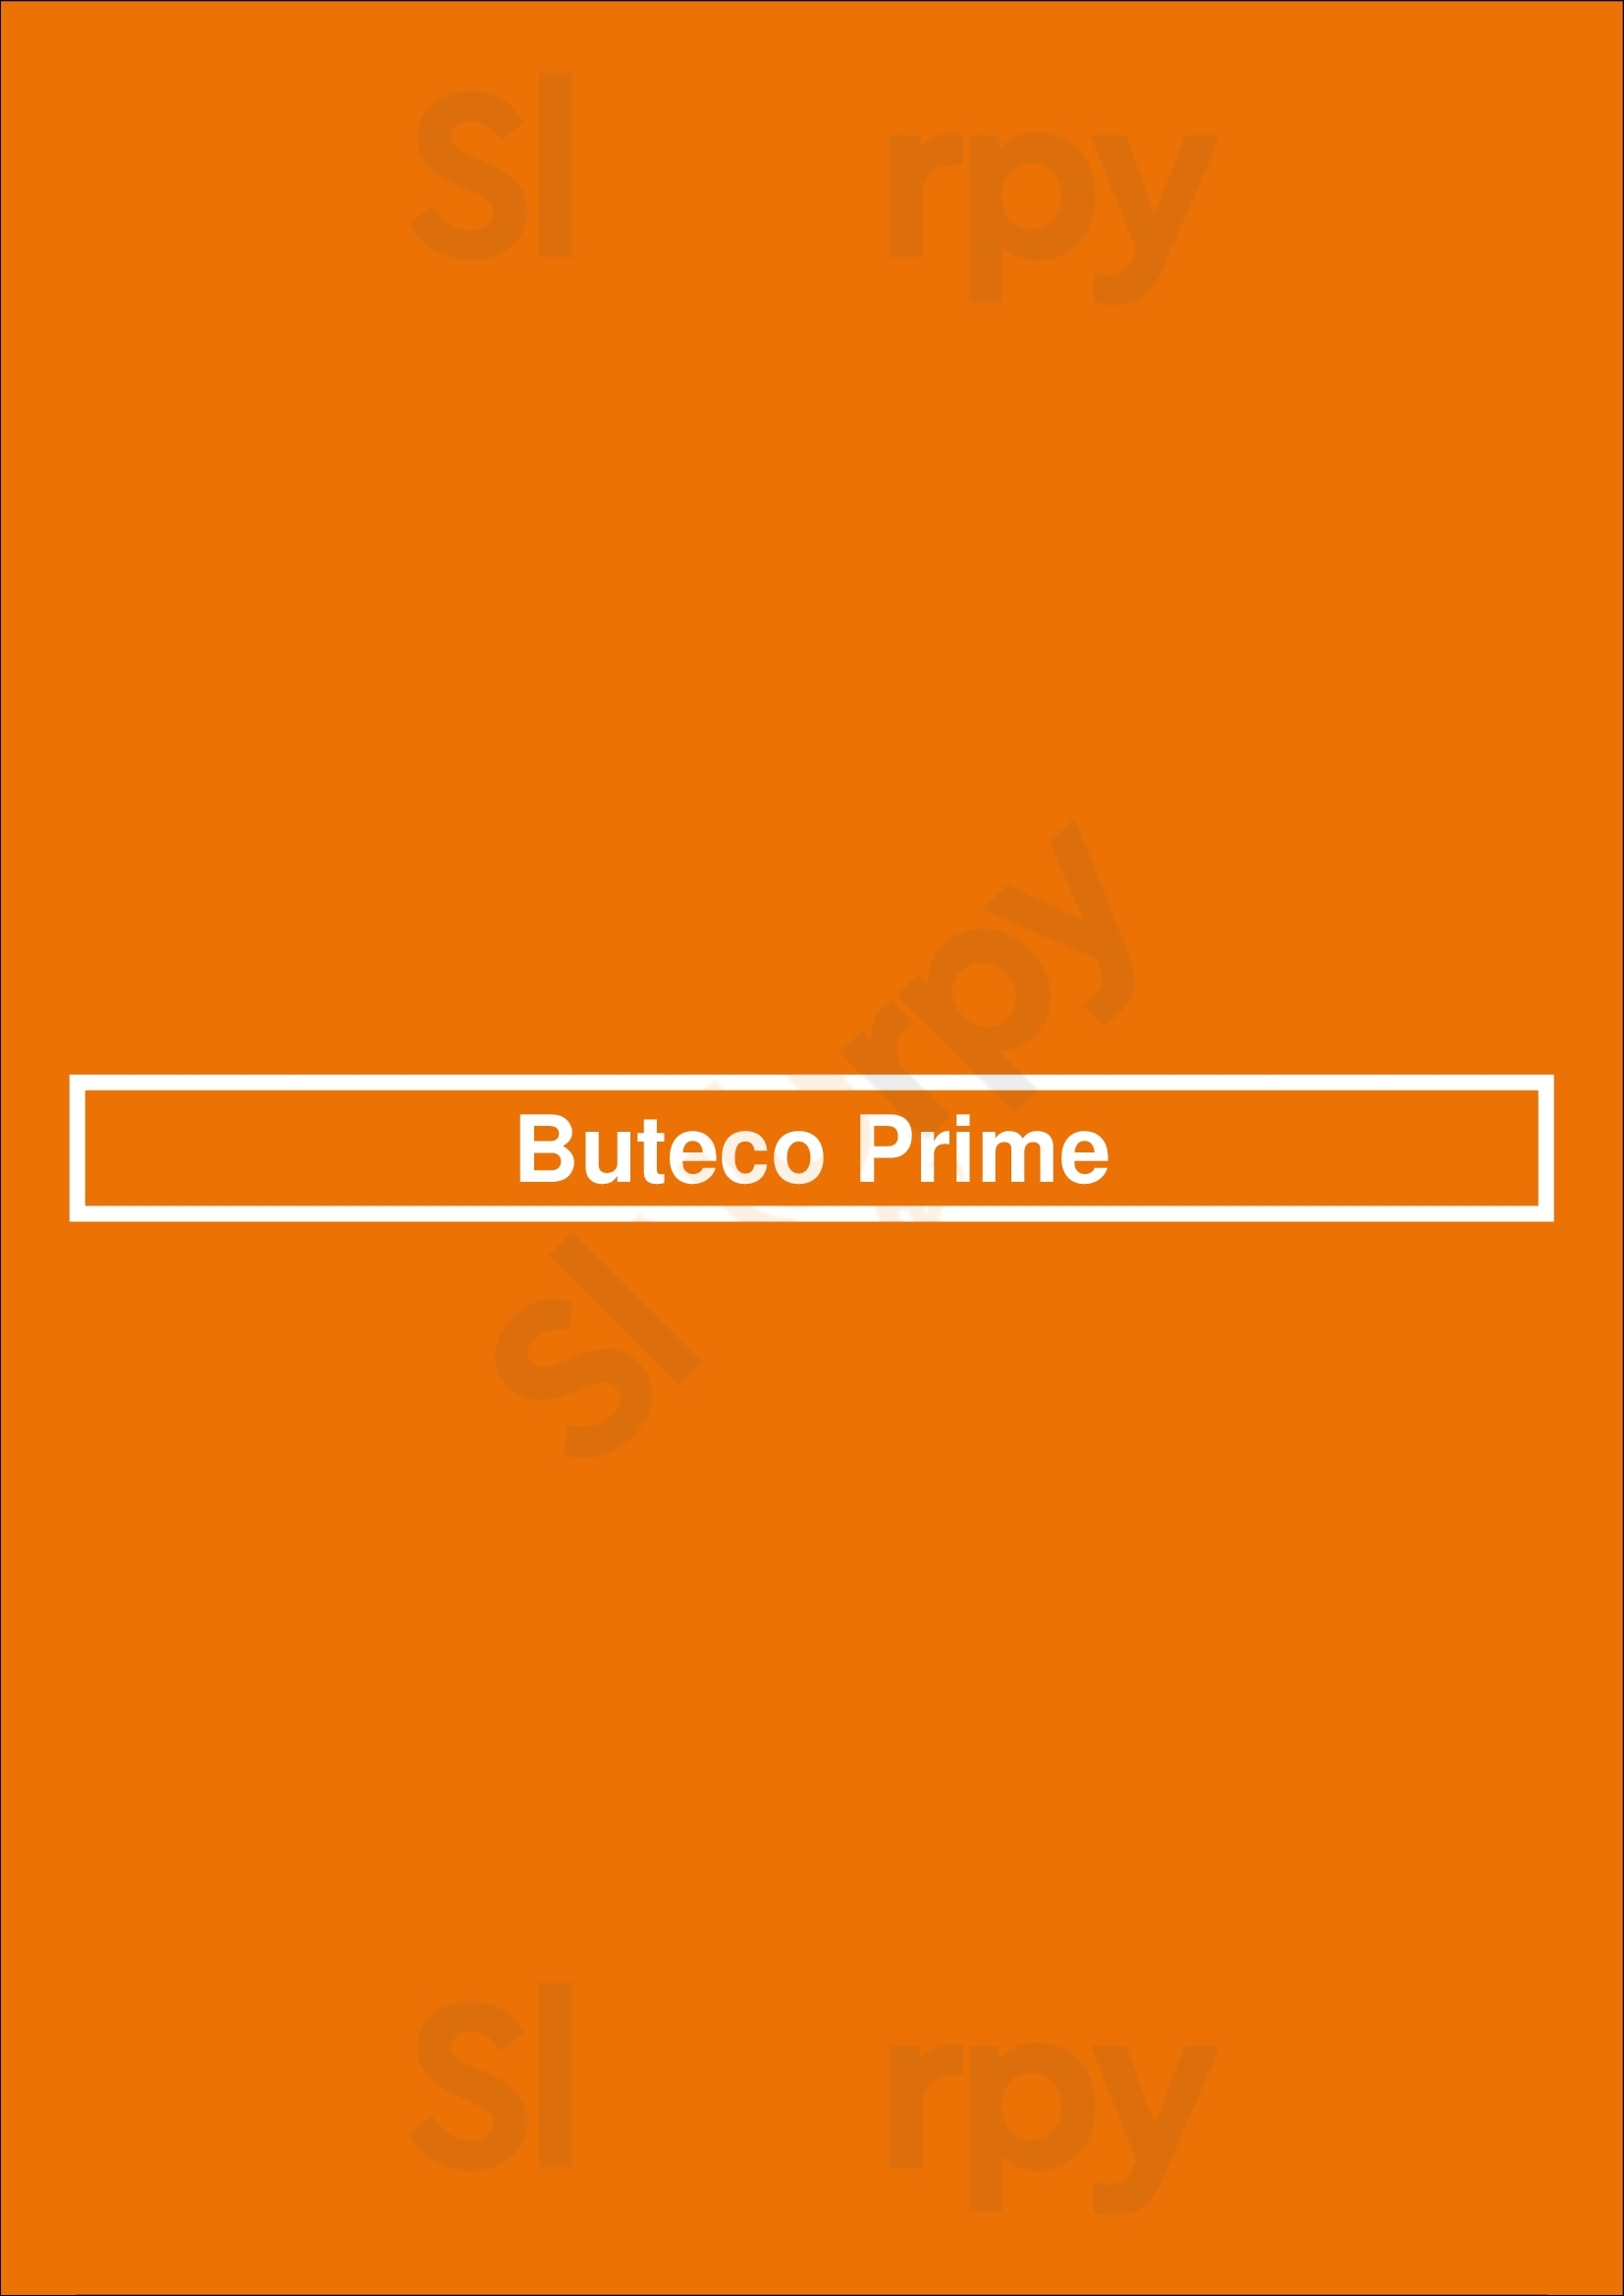 Buteco Prime Oeiras Menu - 1